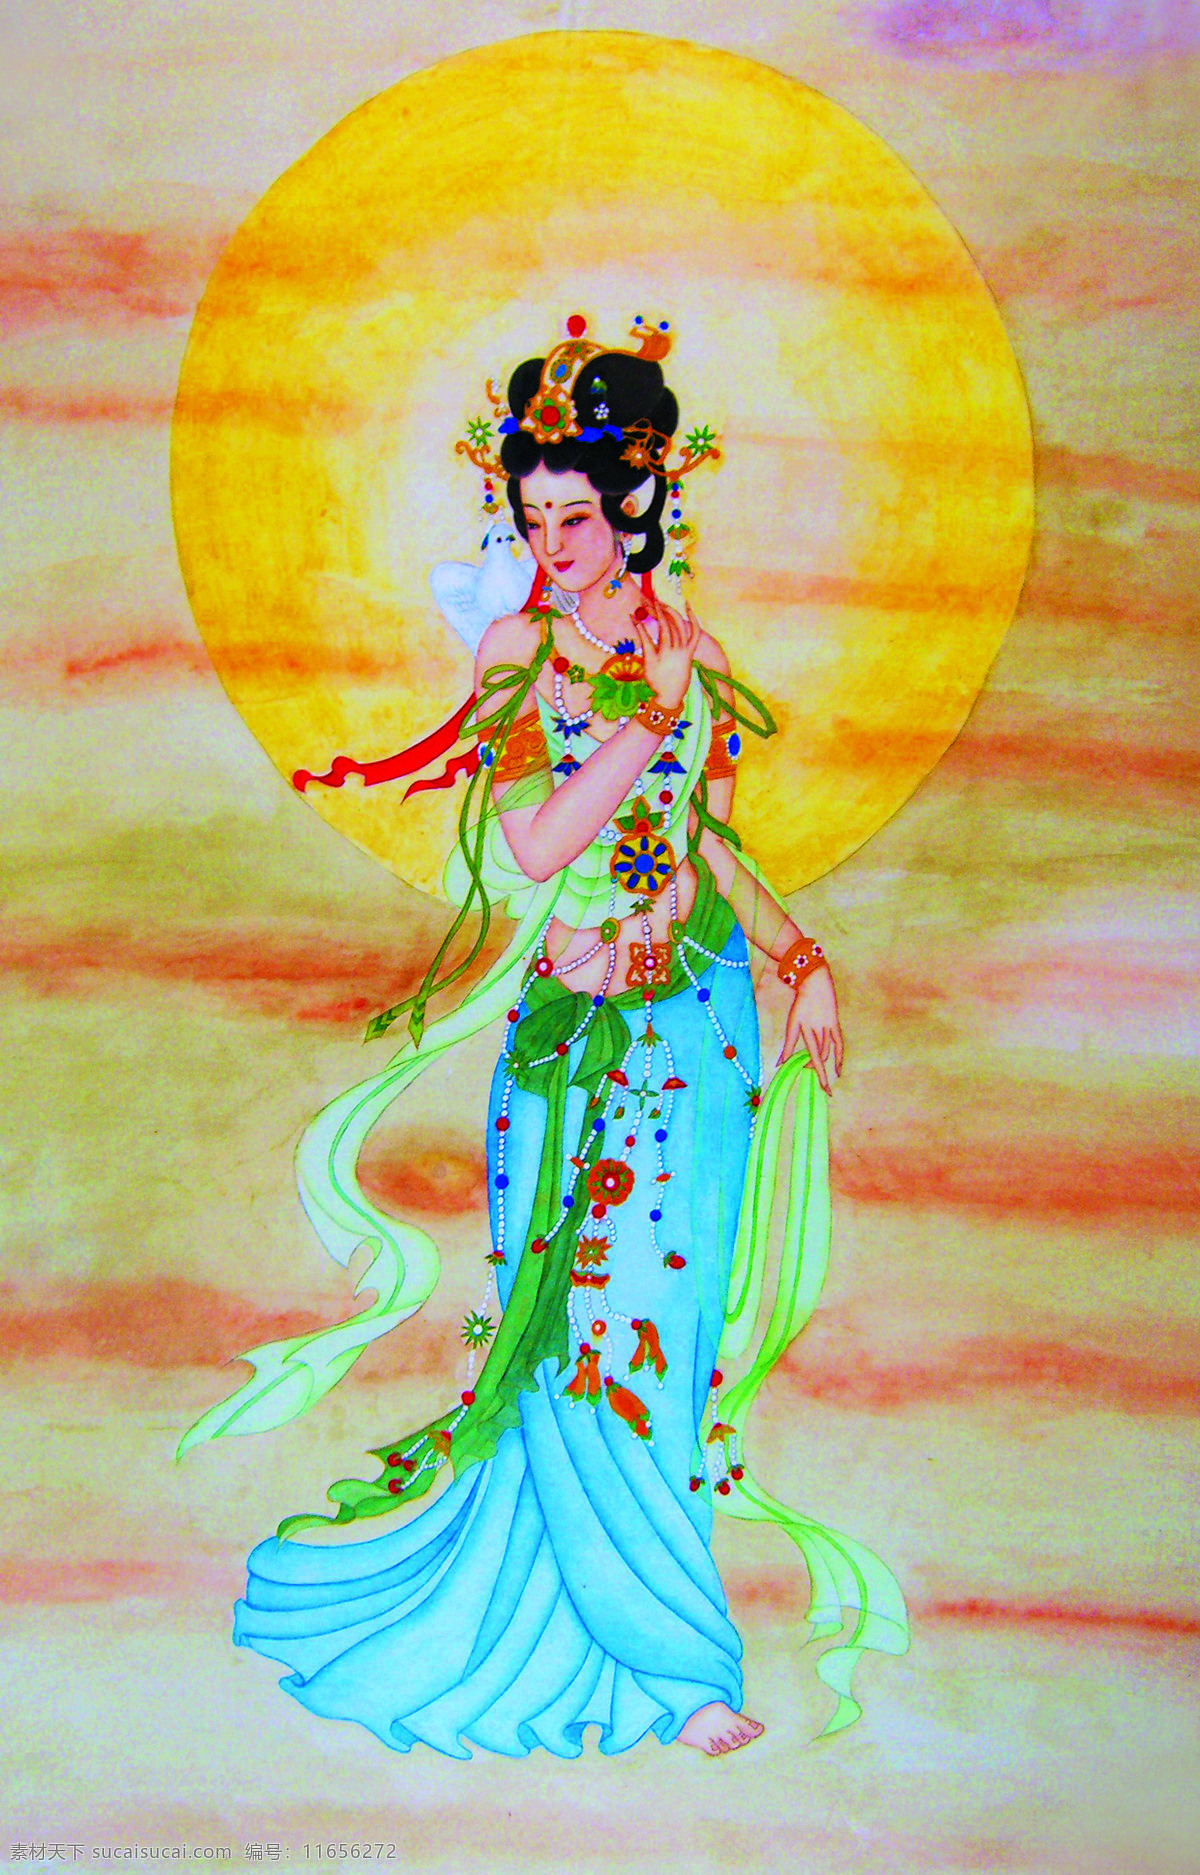 古代仕女图 美术 中国画 人物画 女人 古代仕女 丽人 仙女 国画仕女 国画集125 文化艺术 绘画书法